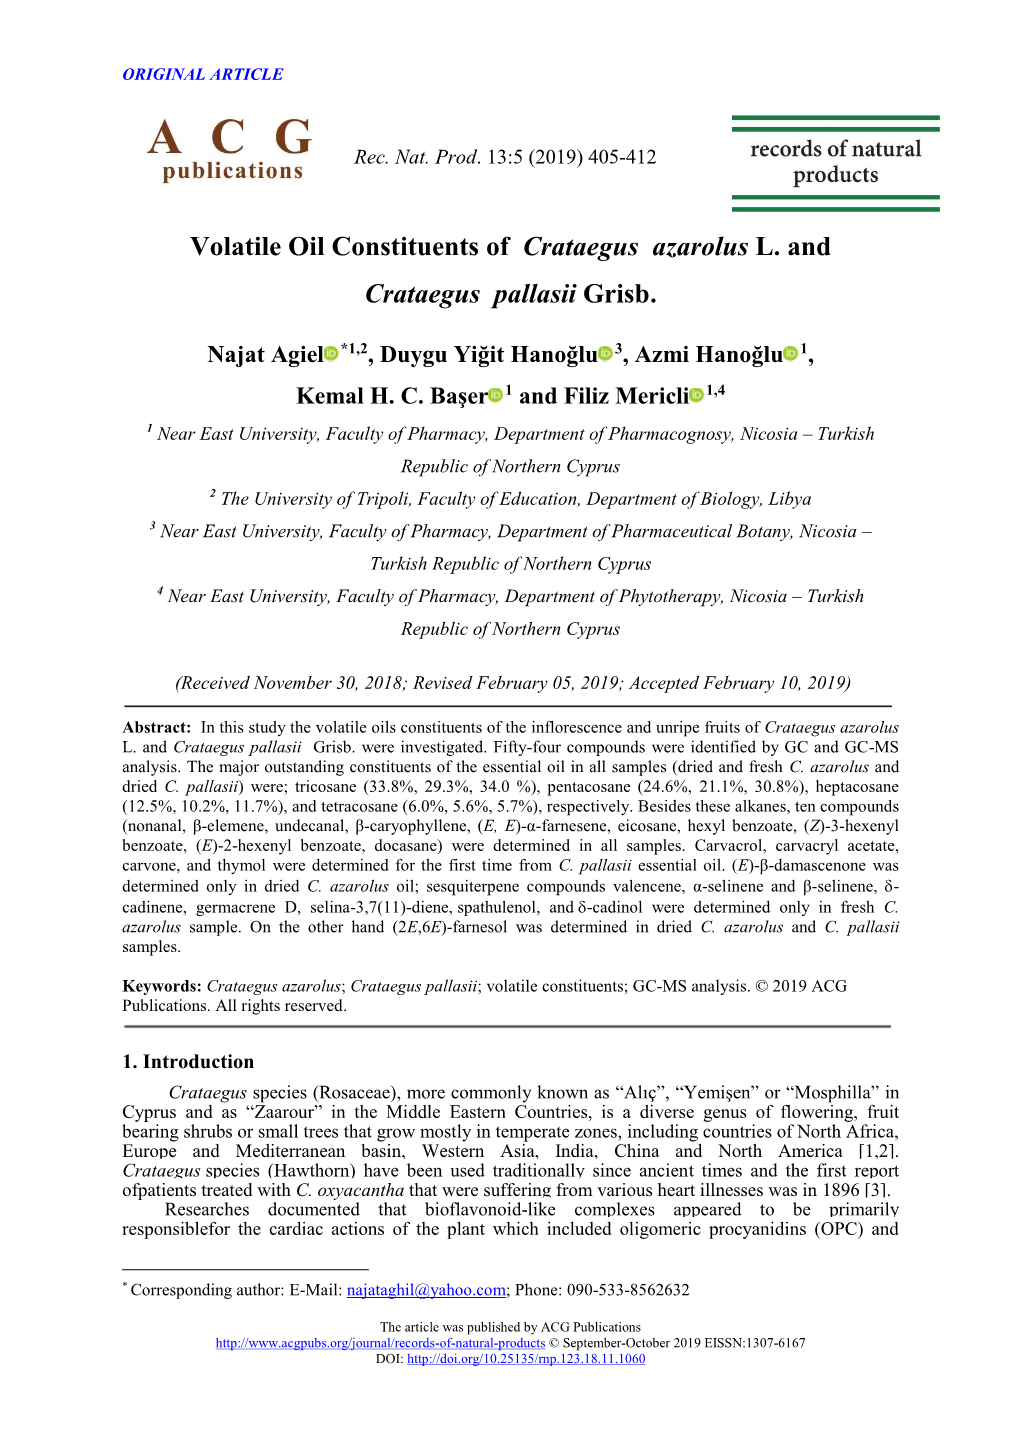 Volatile Oil Constituents of Crataegus Azarolus L. and Crataegus Pallasii Grisb